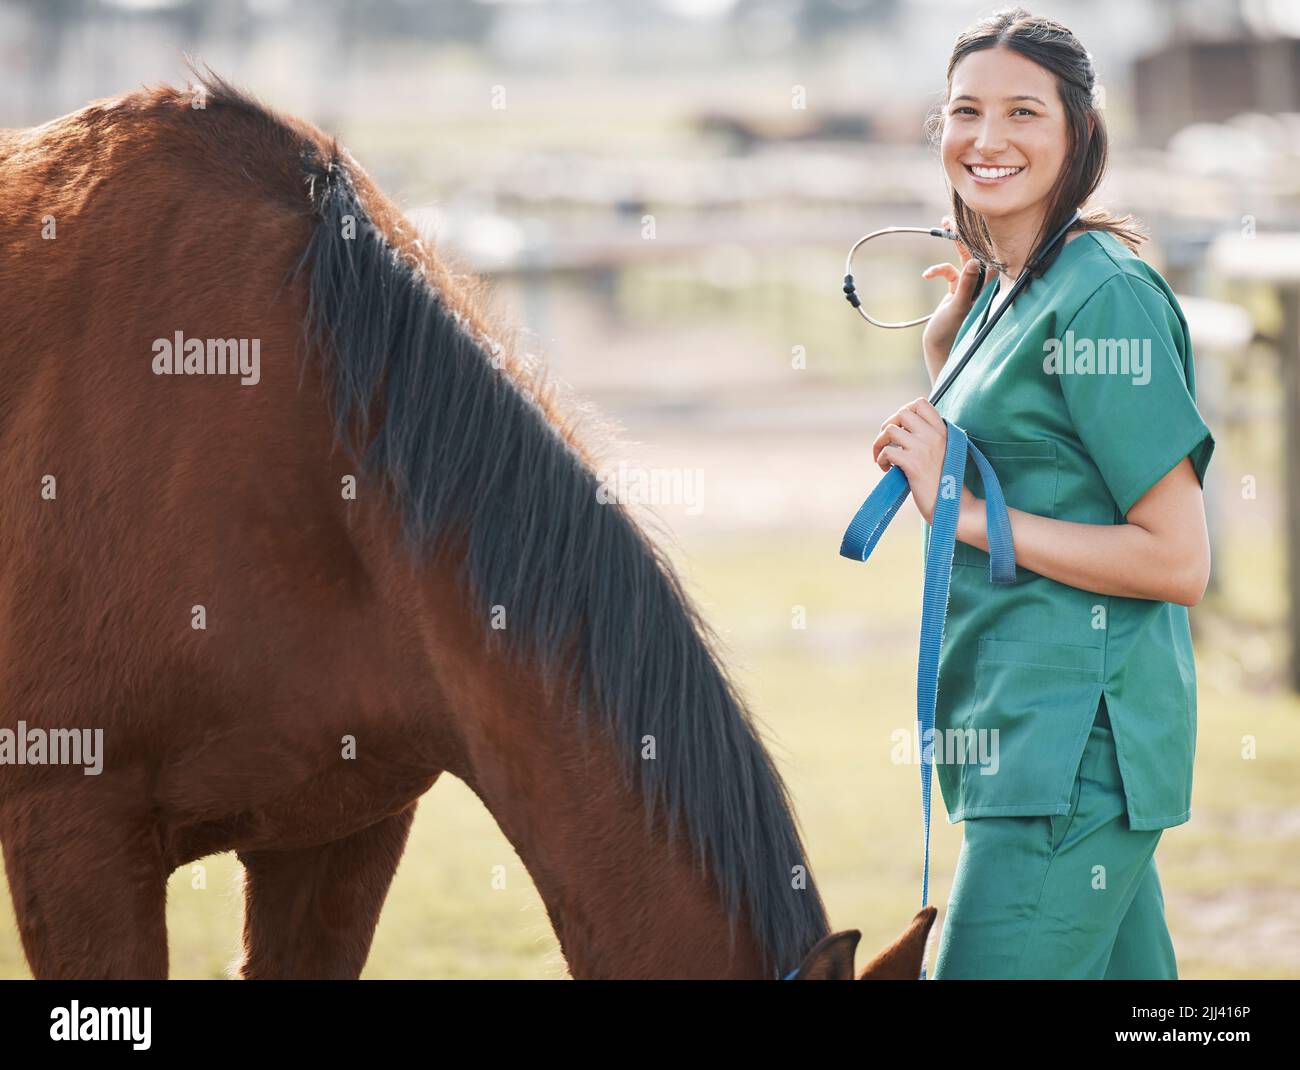 Betrachten Sie mich als den Pferdeflüsterer. Ein attraktiver junger Tierarzt, der allein steht und auf einem Bauernhof ein Pferd besucht. Stockfoto